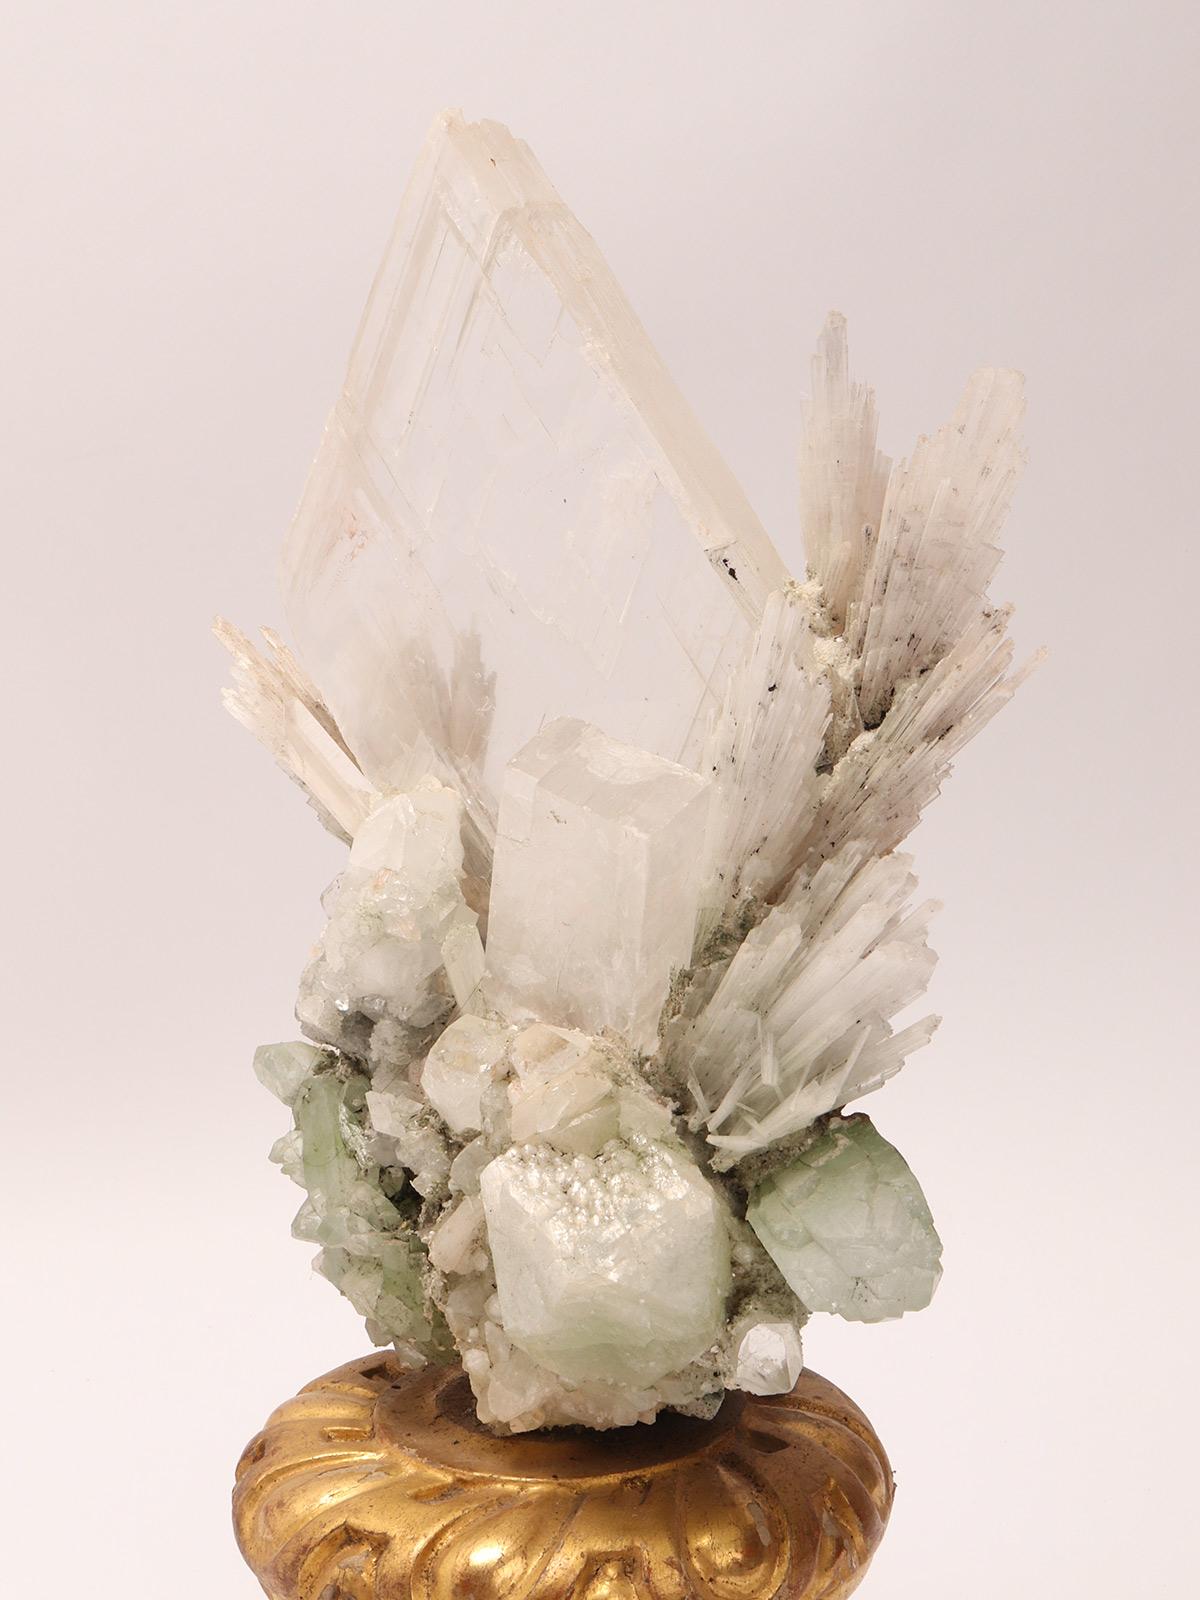 Italian Natural Specimen: Apophilite, Quartz and Calcite Flowers Crystals, Italy, 1880 For Sale